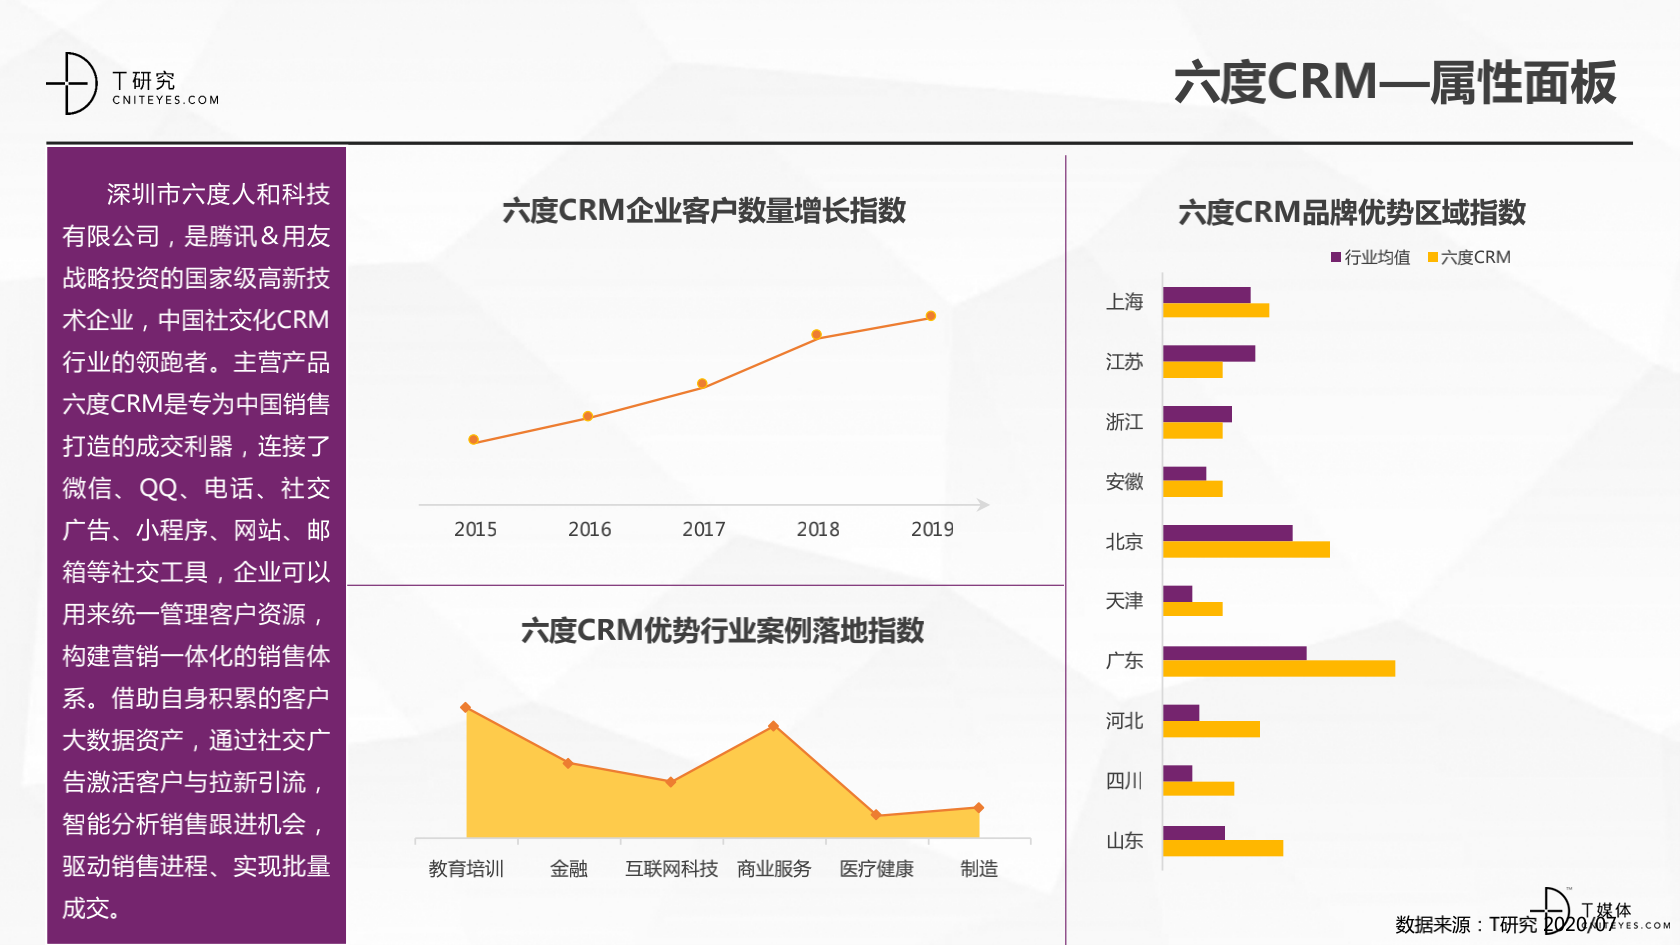 2_2020中国CRM指数测评报告v1.5_29.png